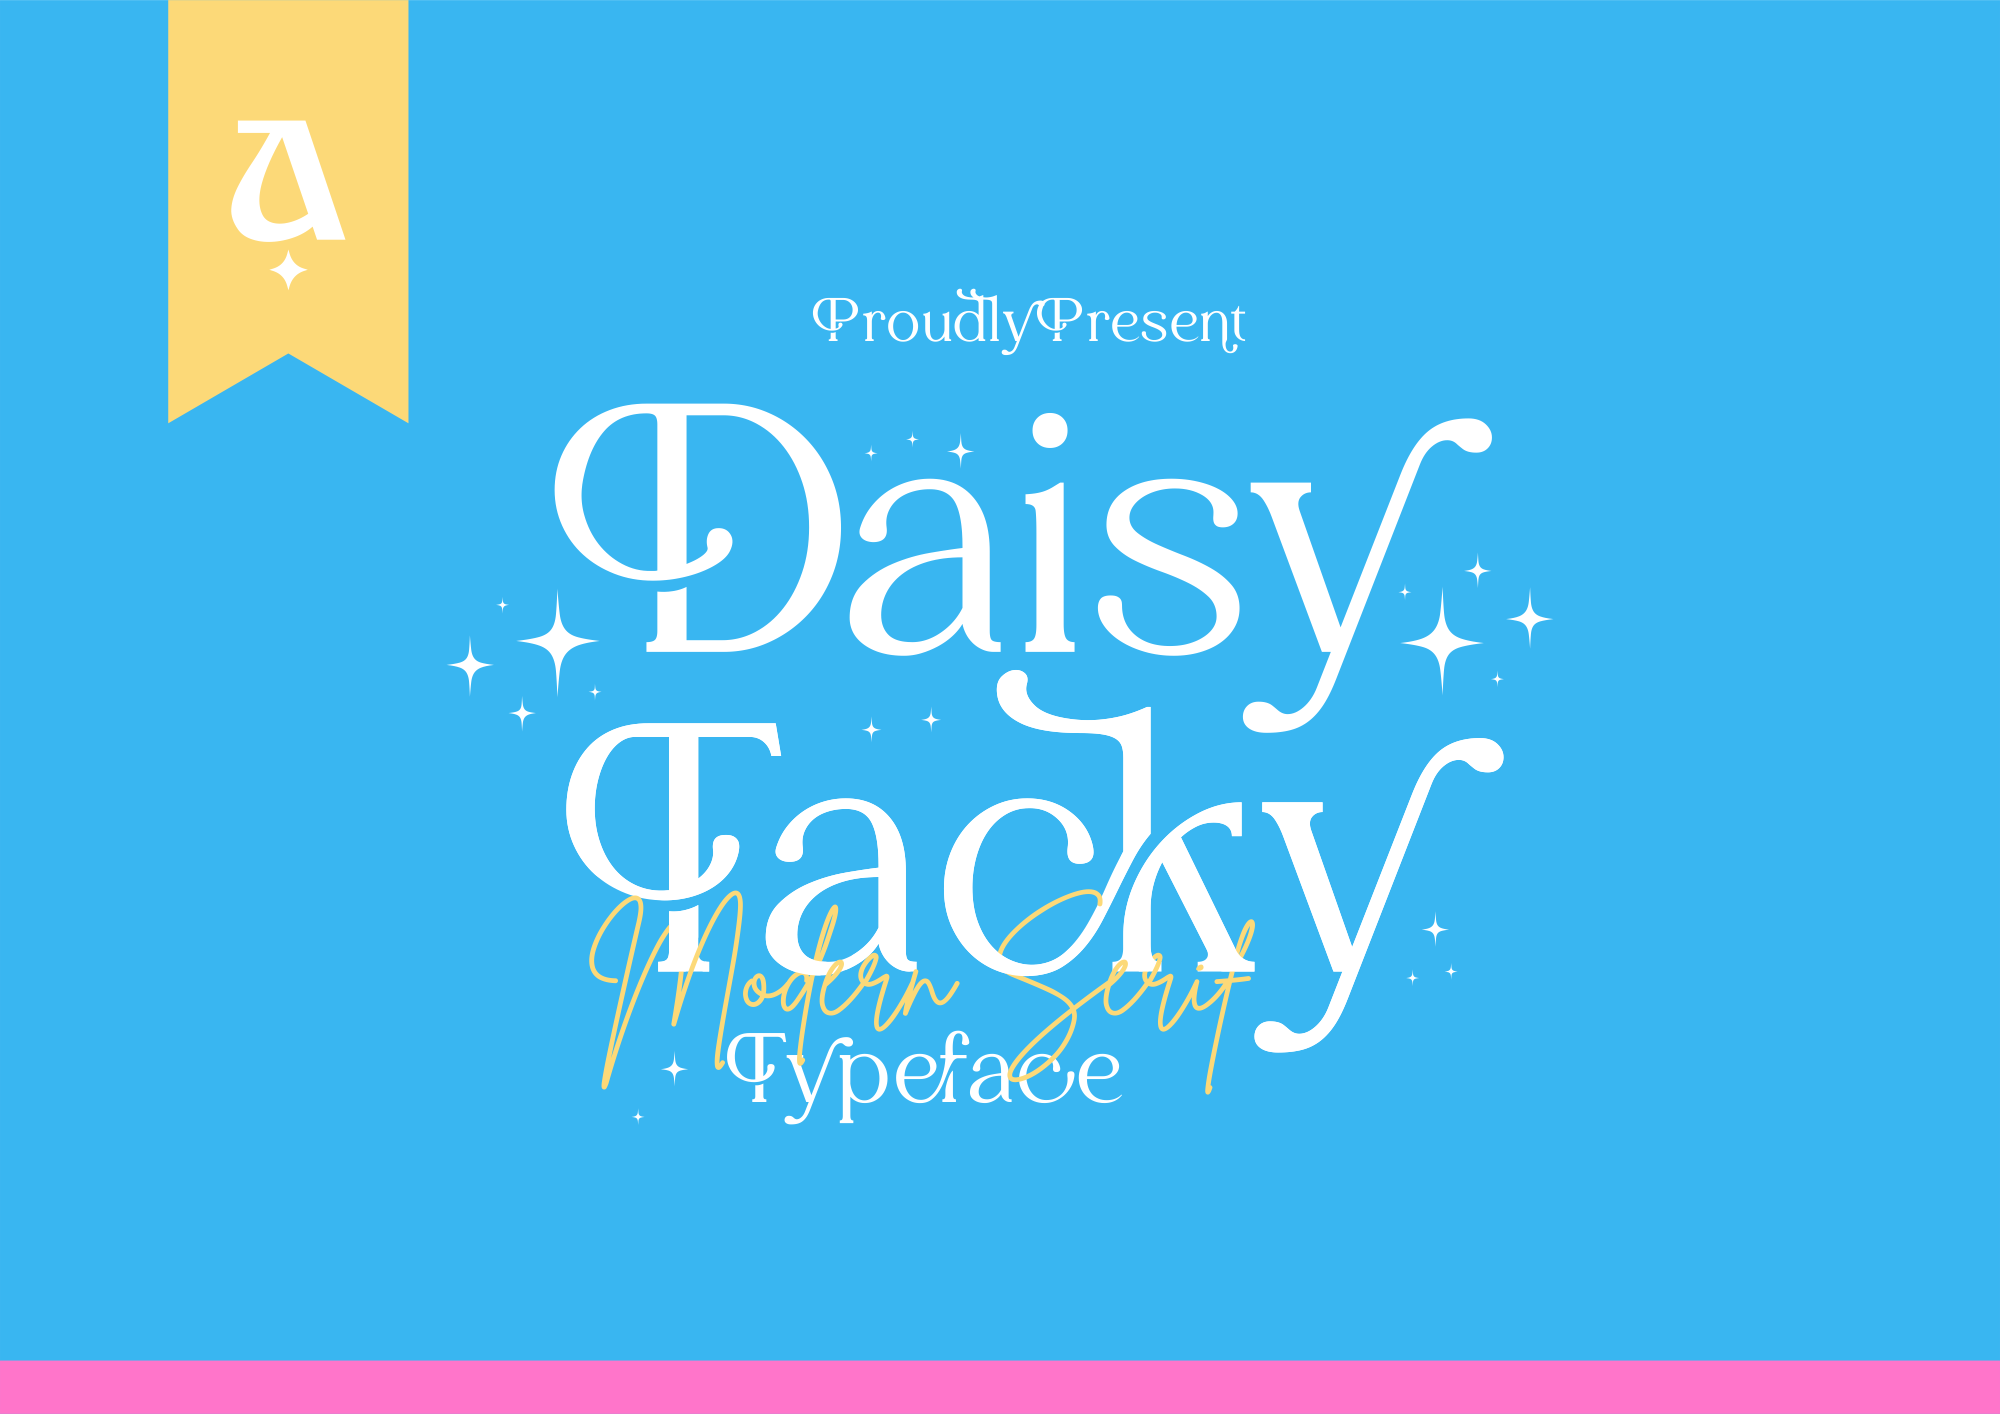 Daisy Tacky